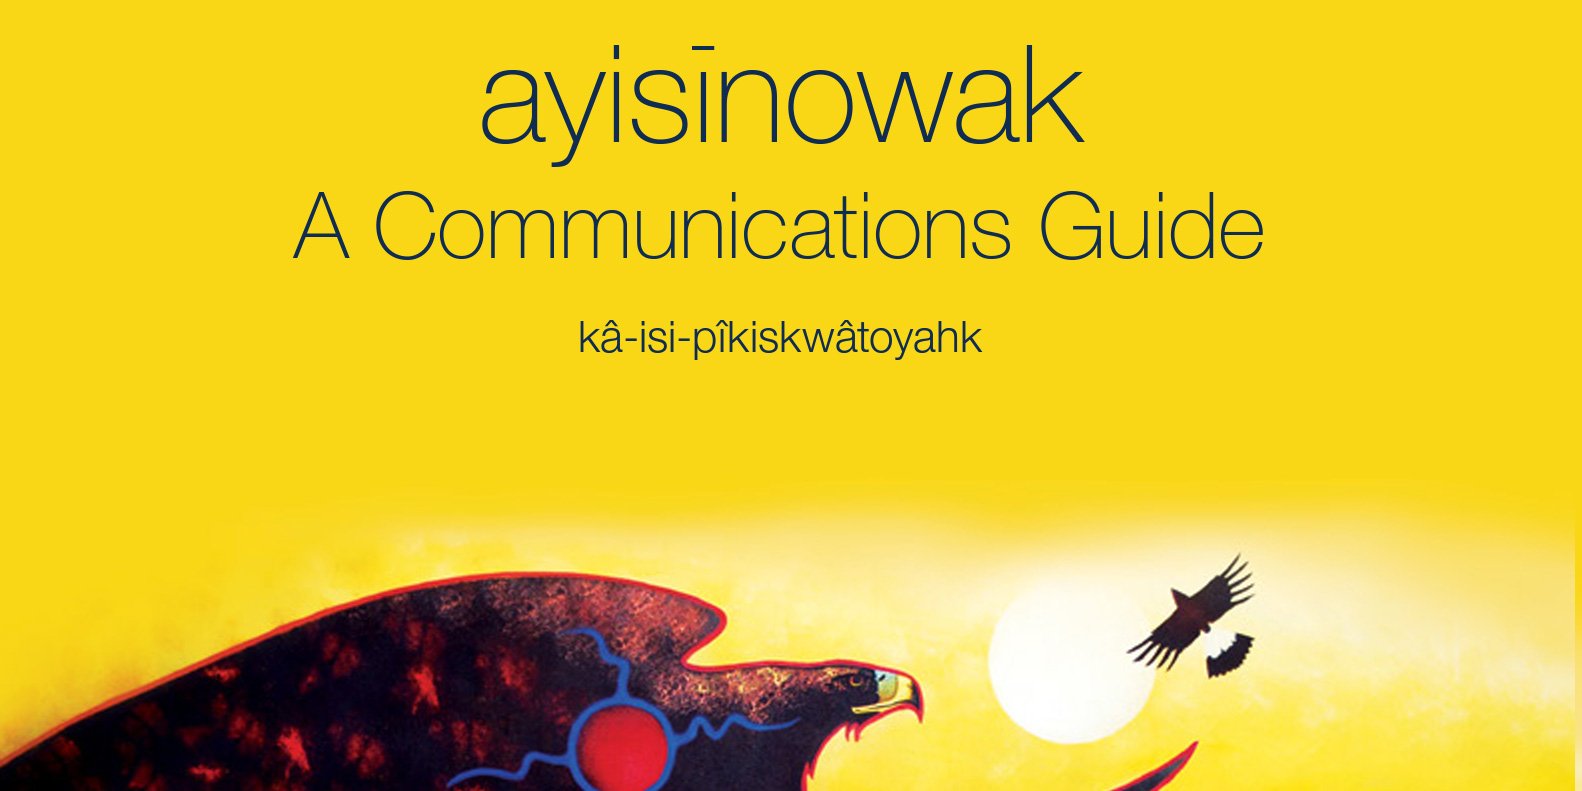 ayisīnowak: A Communications Guide